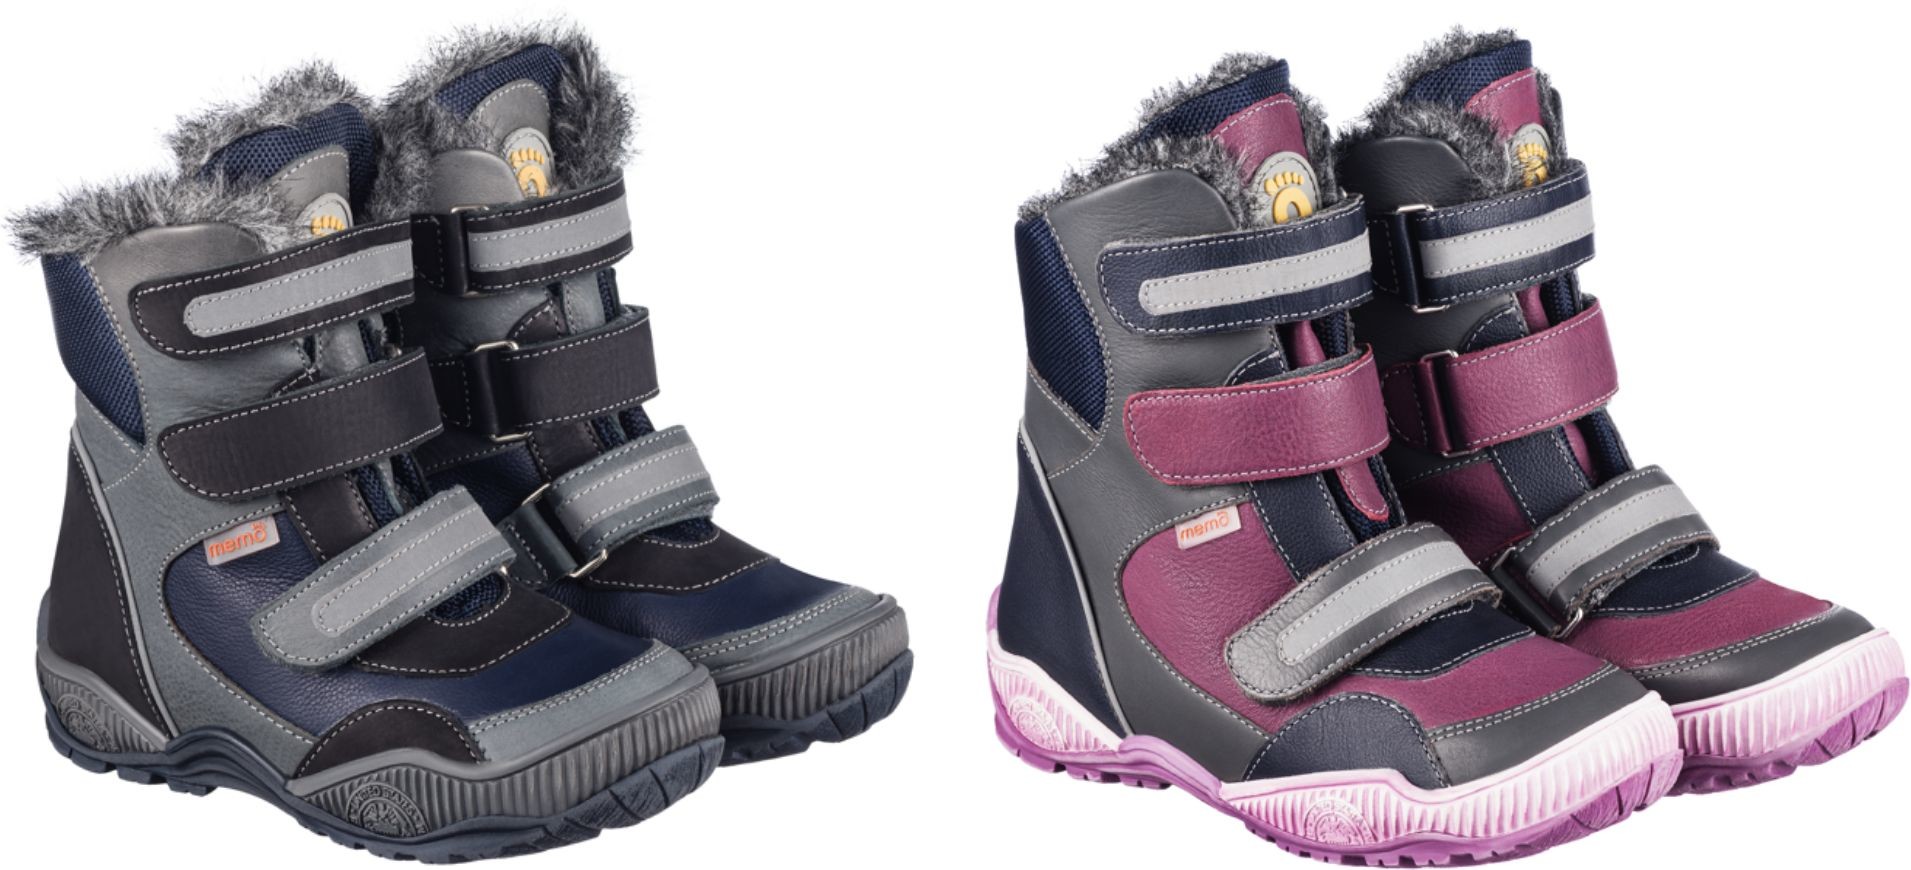 Zimowe, ocieplane buty profilaktyczno-korygujące z wysoką cholewką i antypoślizgową podeszwą (Colorado)